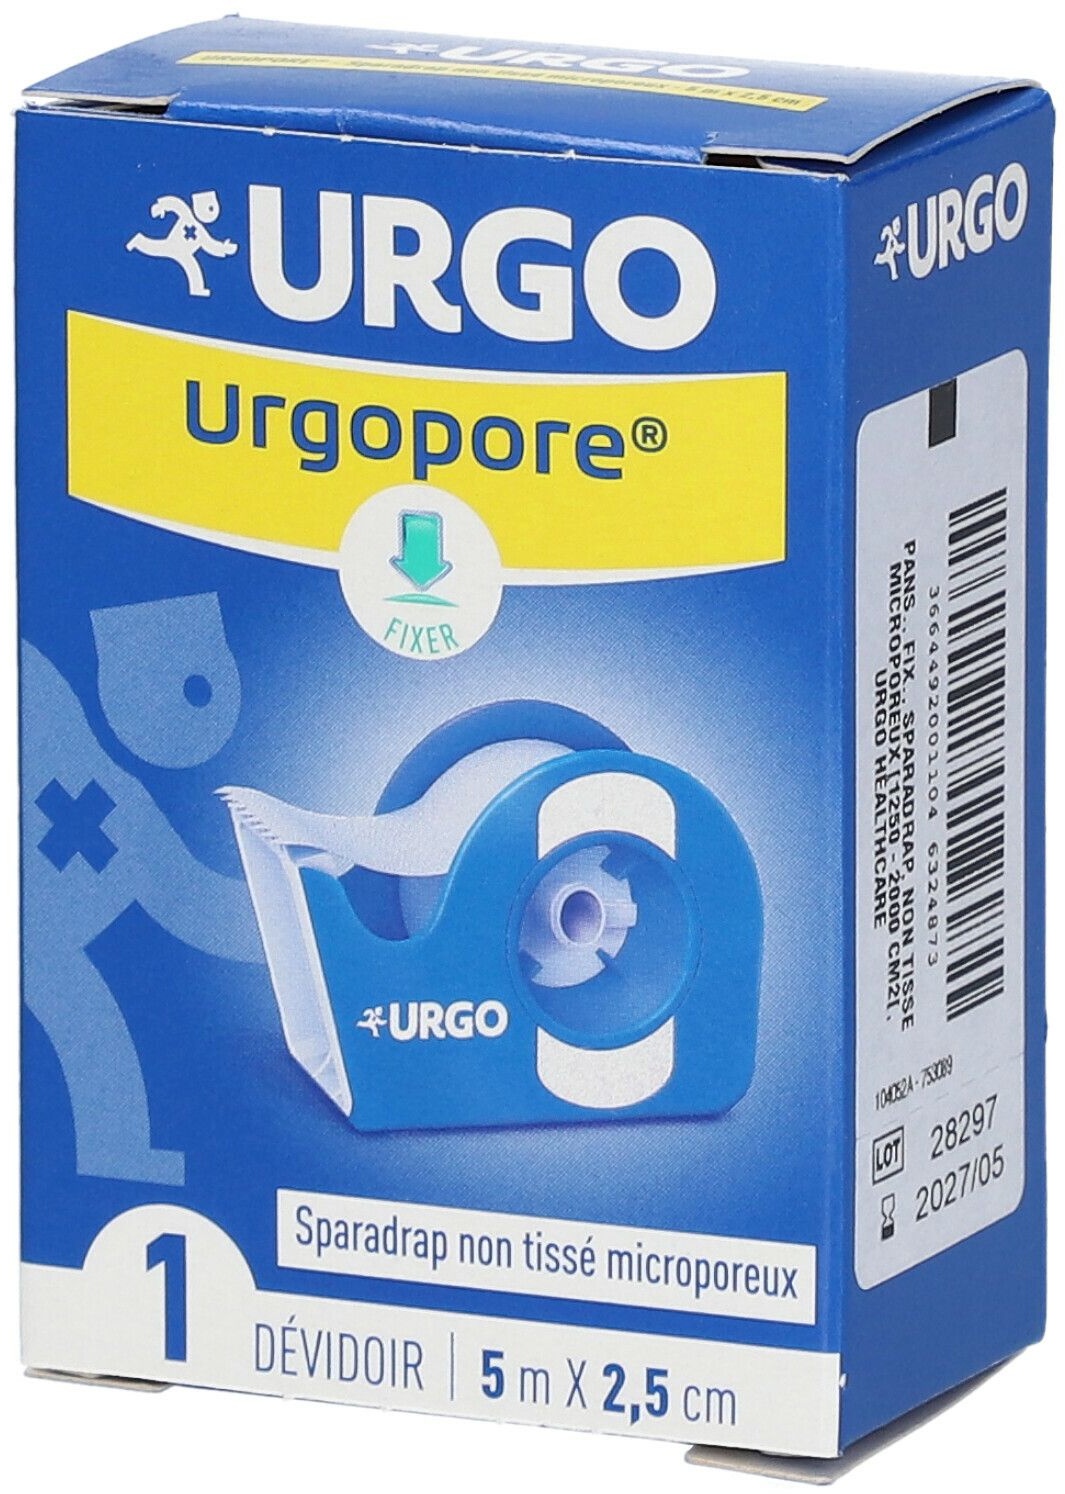 URGO Urgopore® Géant Sparadrap non tissé microporeux 5 m x 2,5 cm 1 pc(s) pansement(s)